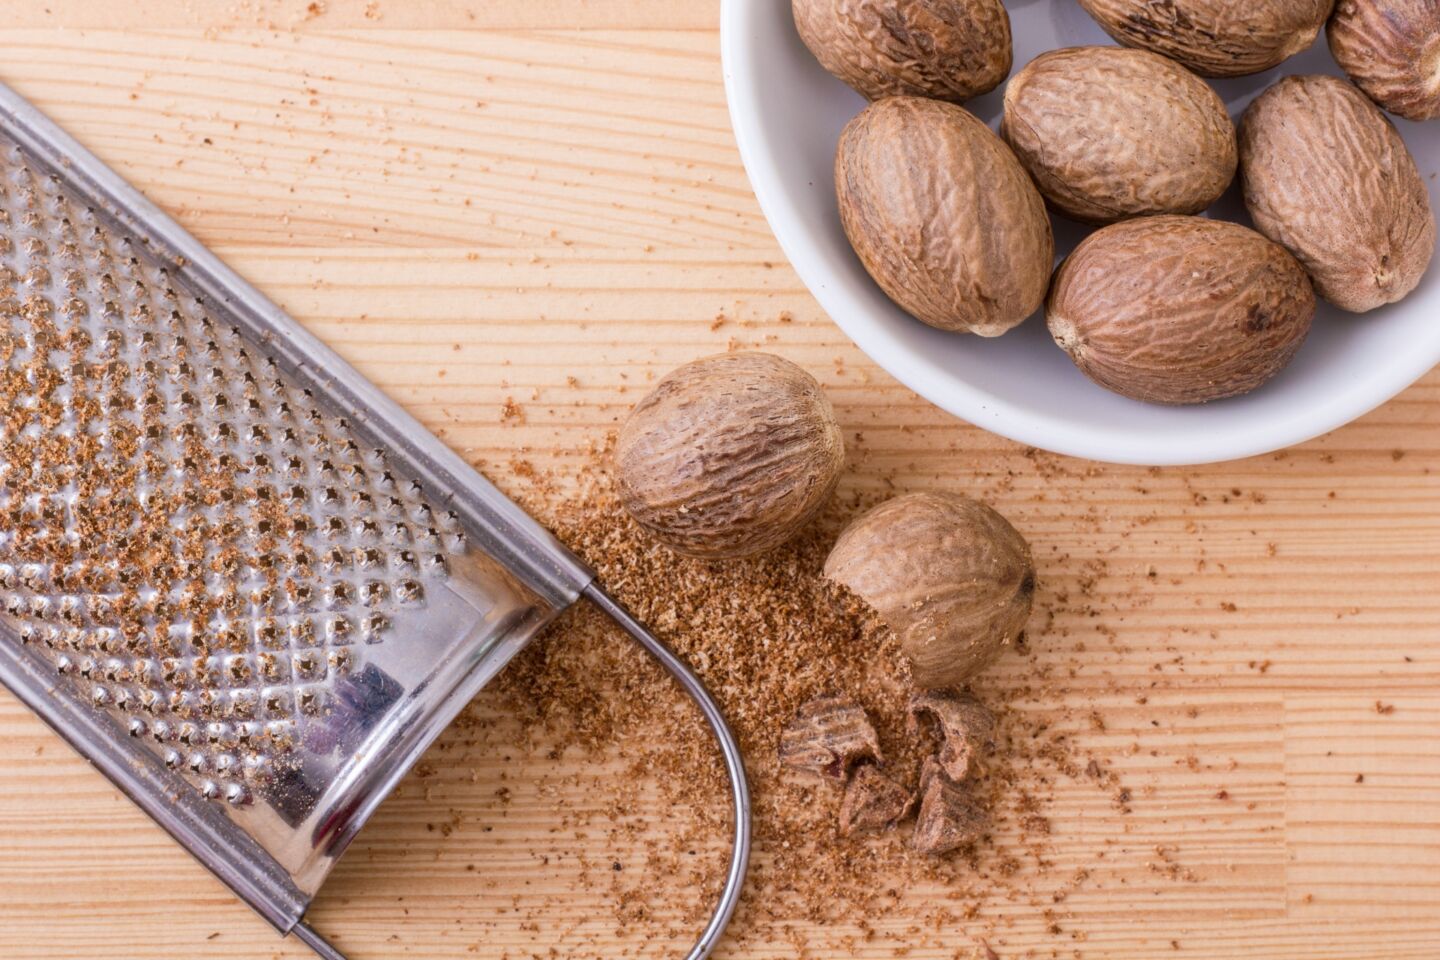 10 southern seasonings - nutmeg